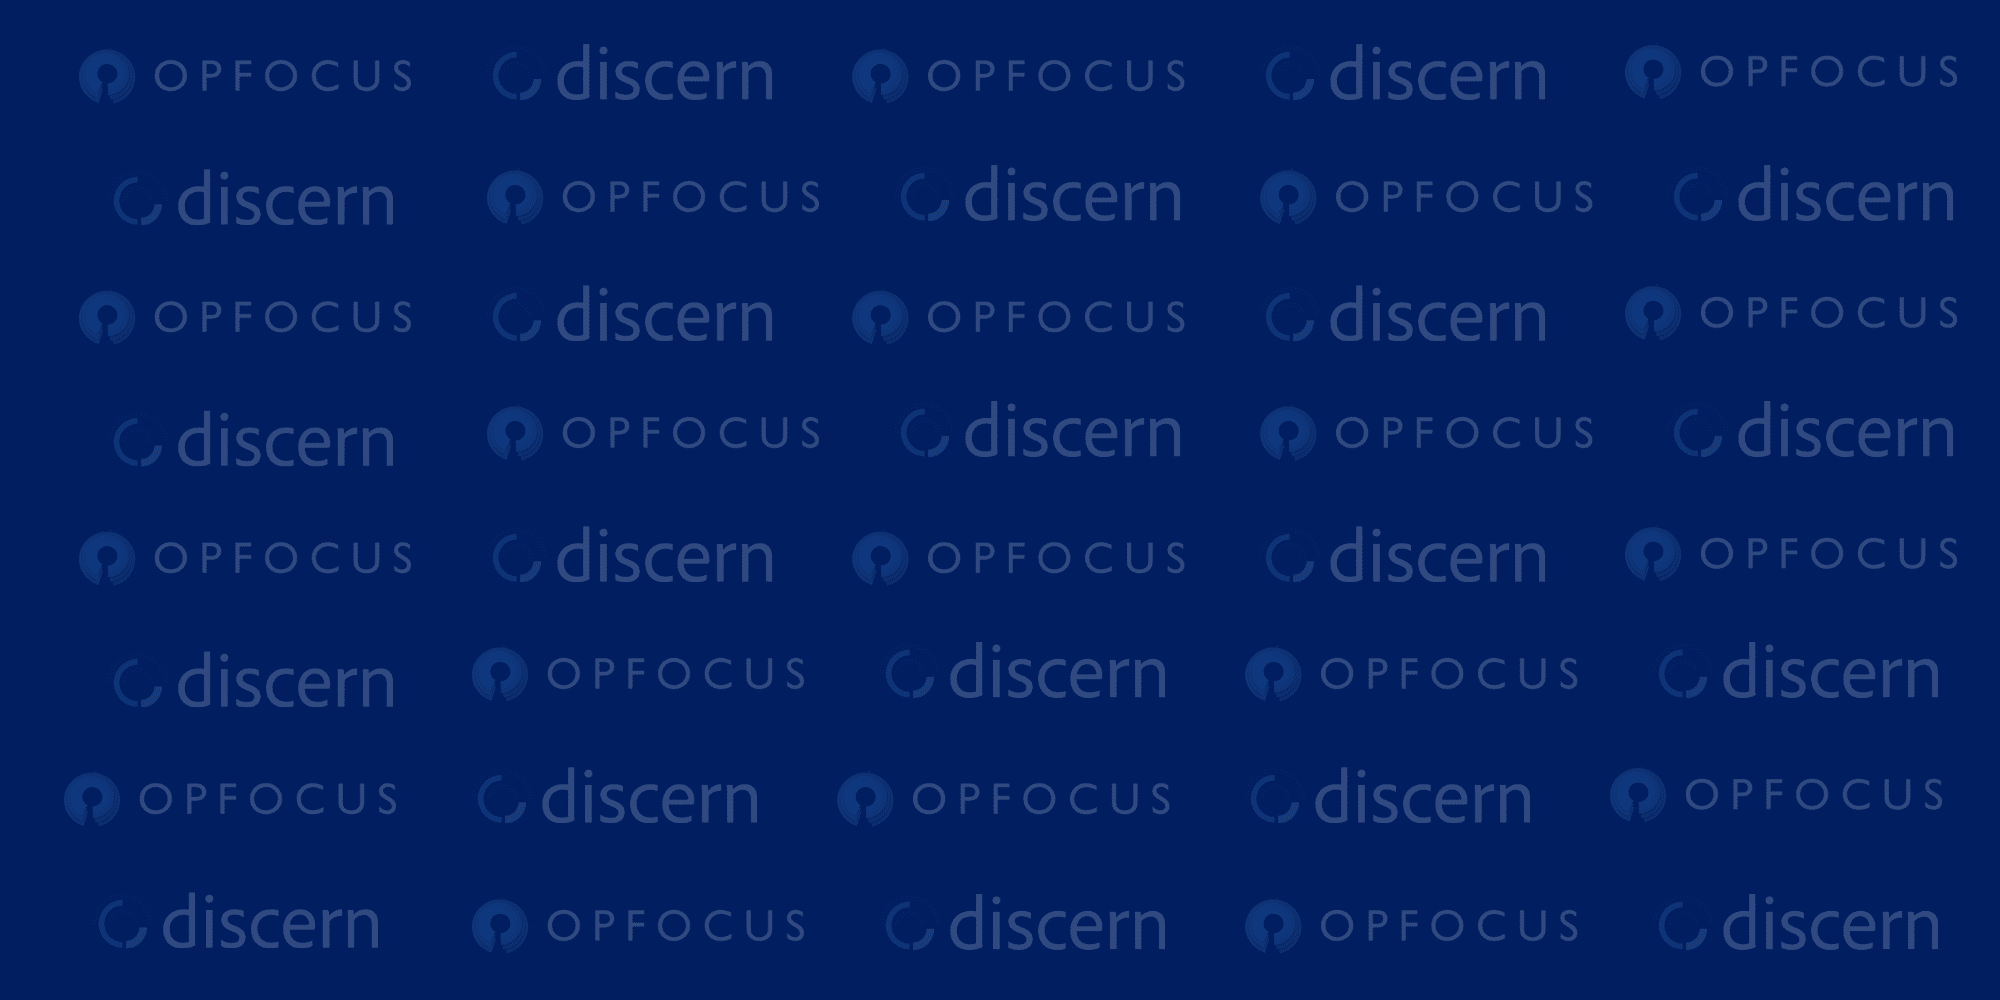 OpFocus - Discern Partnership